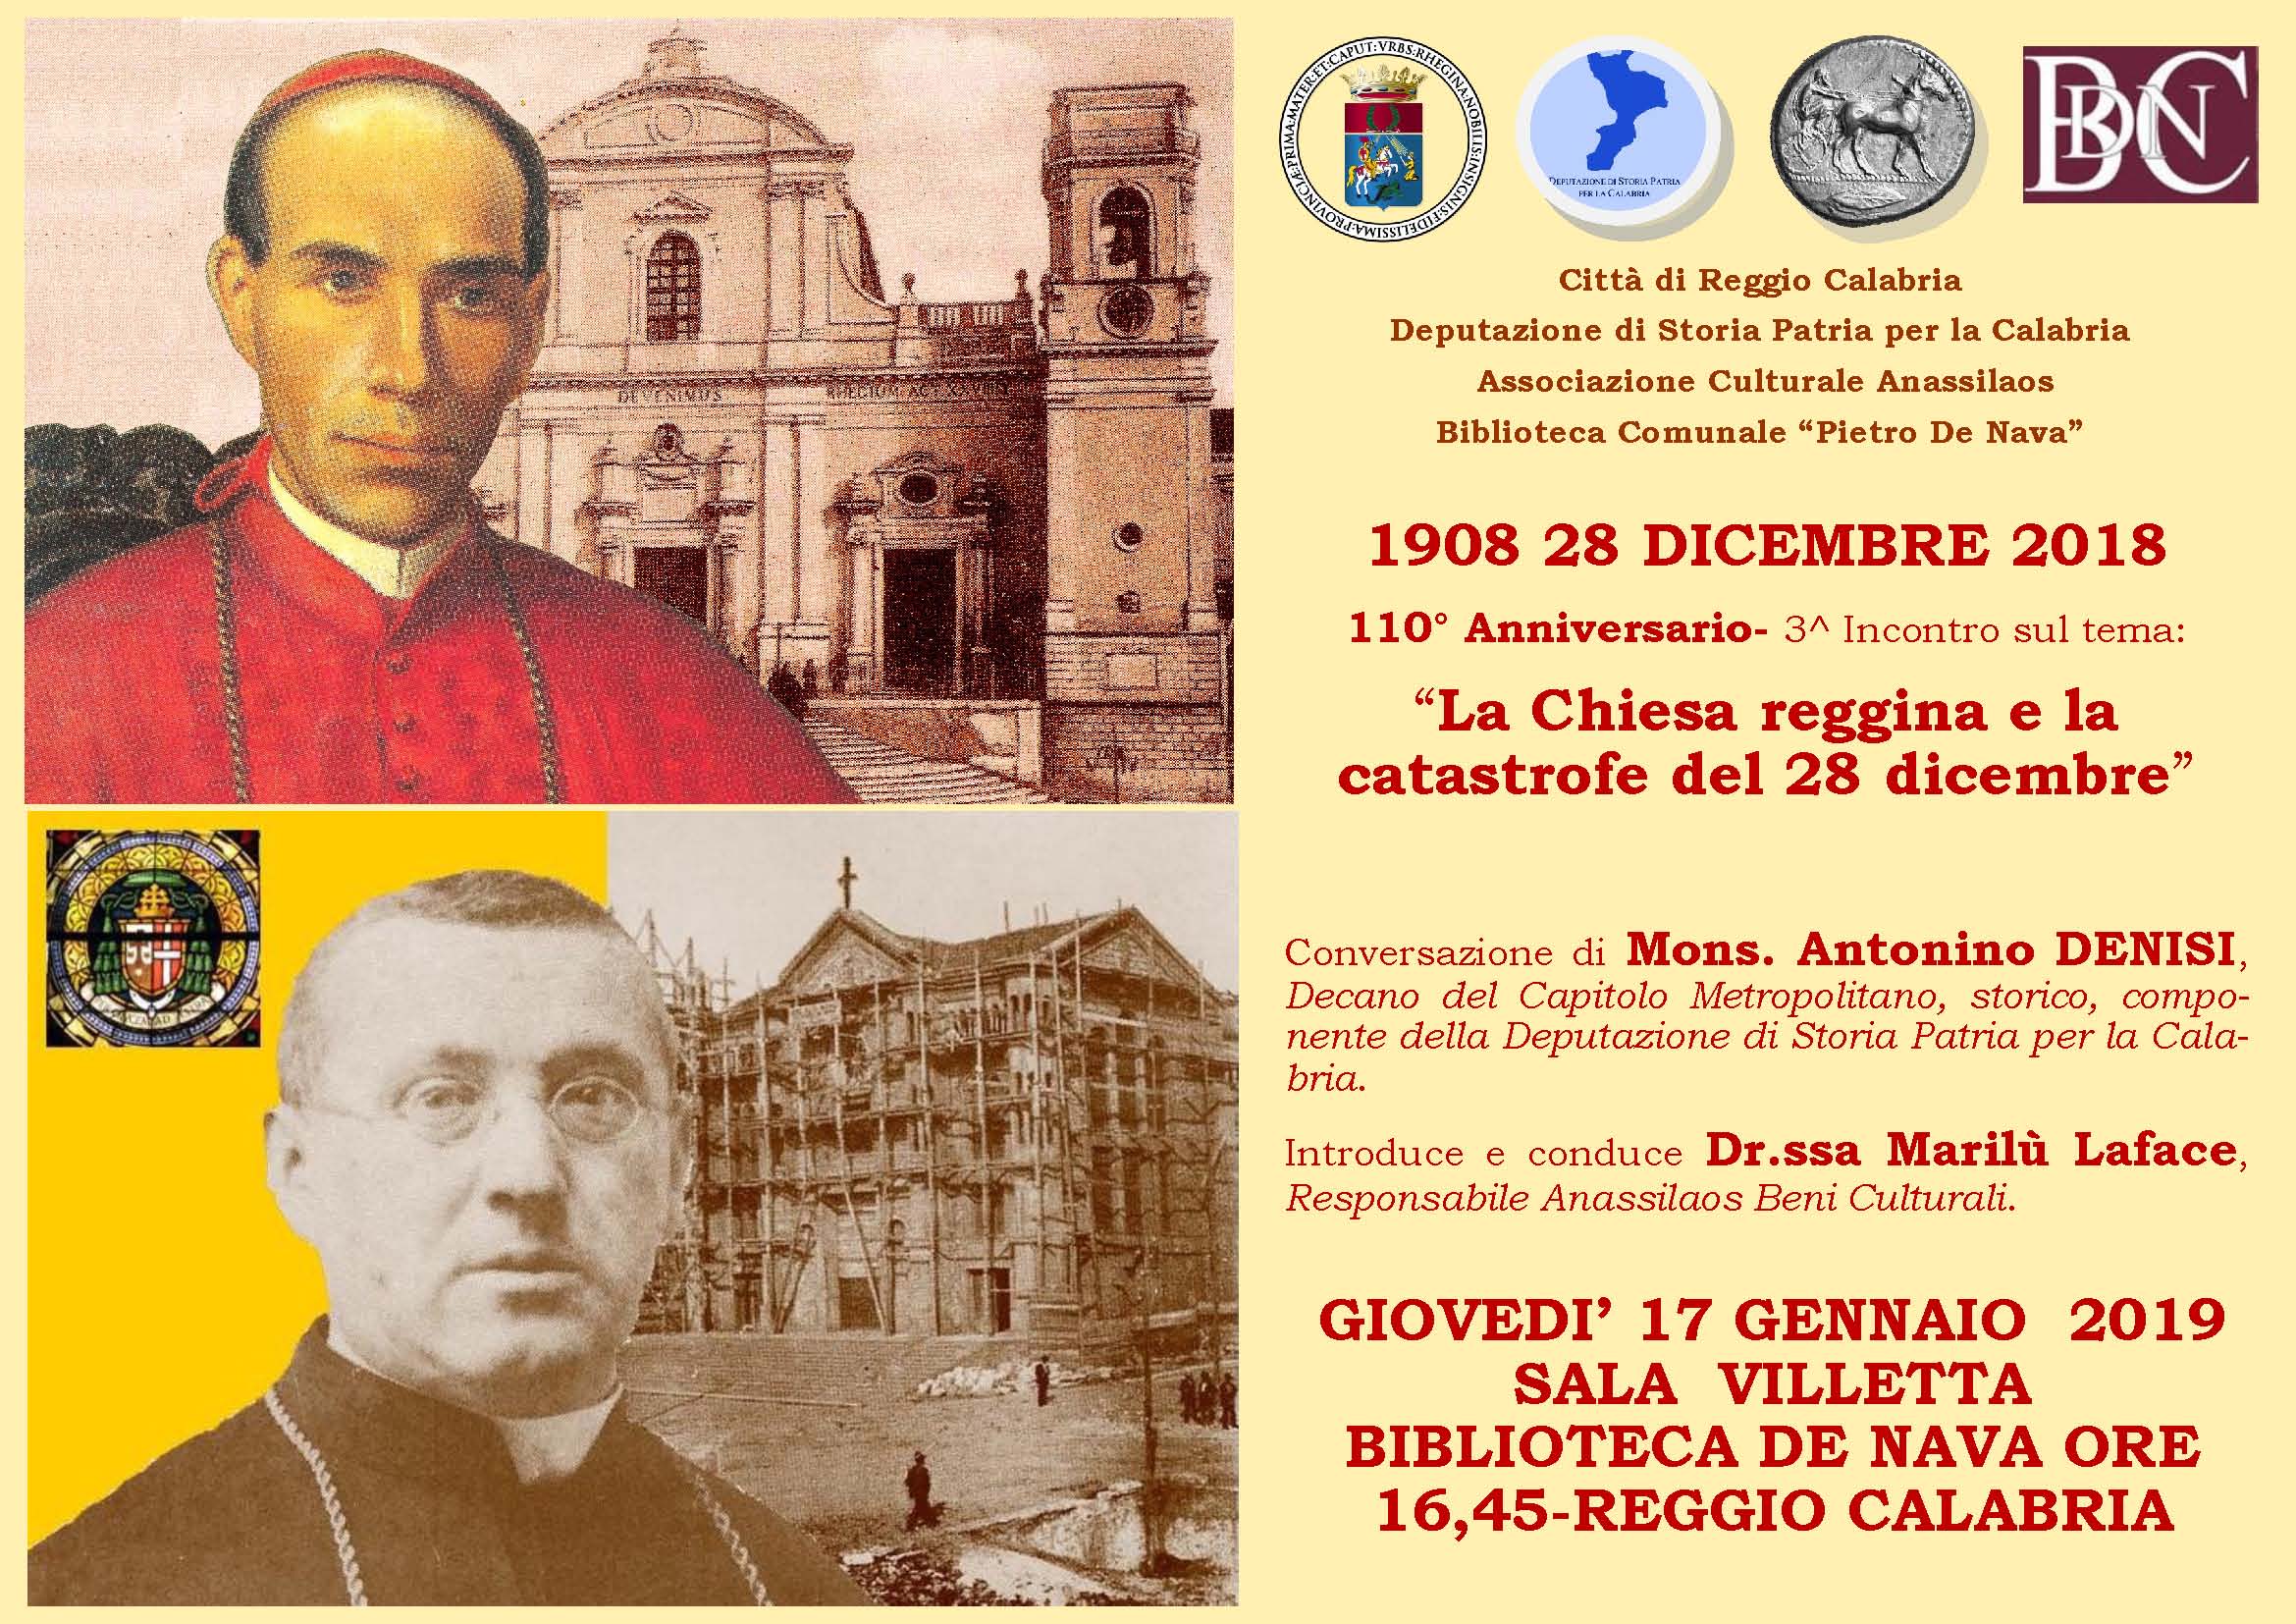 Conversazione di Mons. Antonino Denisi “La Chiesa reggina e la catastrofe del 28 dicembre”